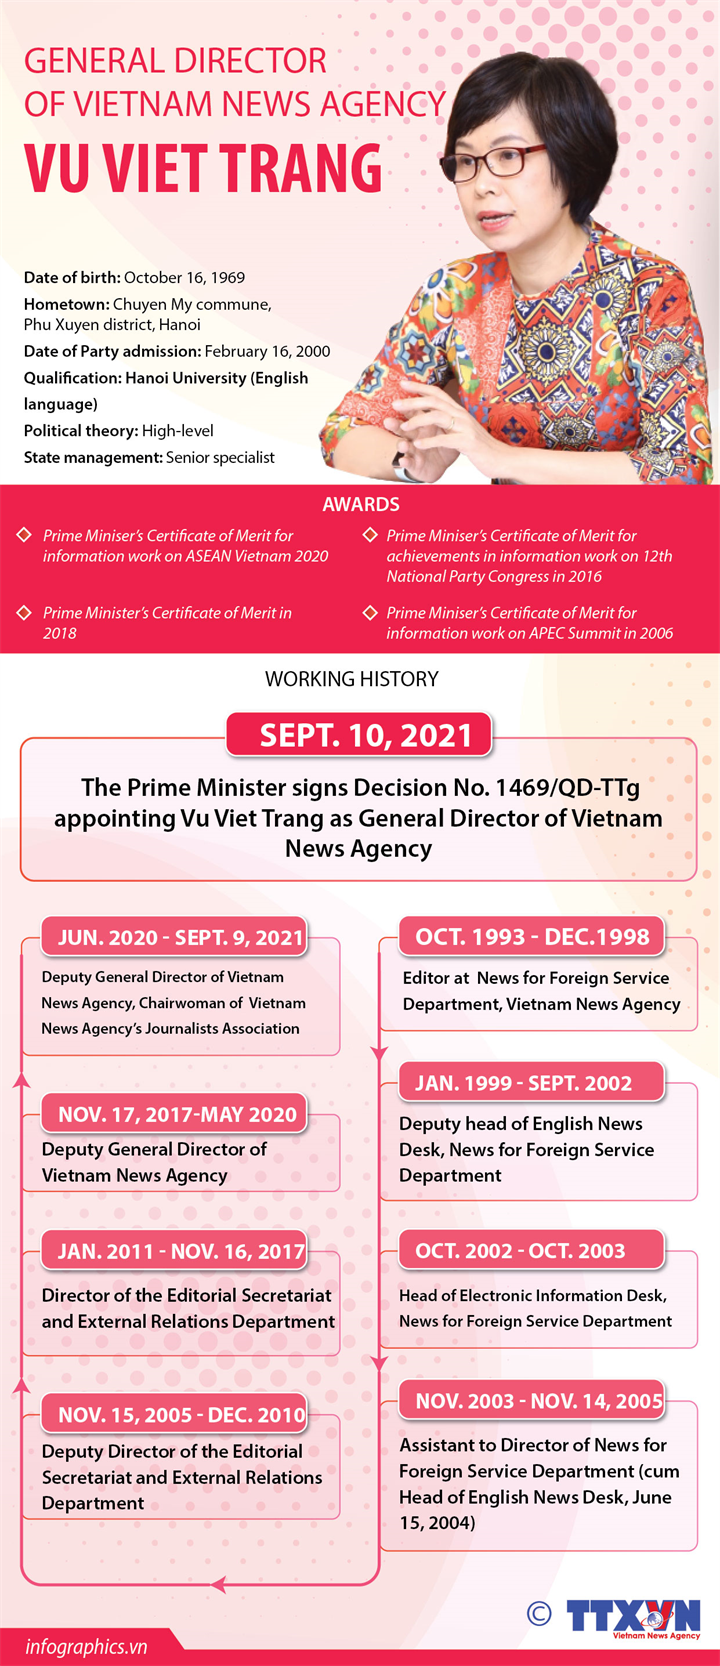 Vu Viet Trang appointed as Vietnam News Agency General Director